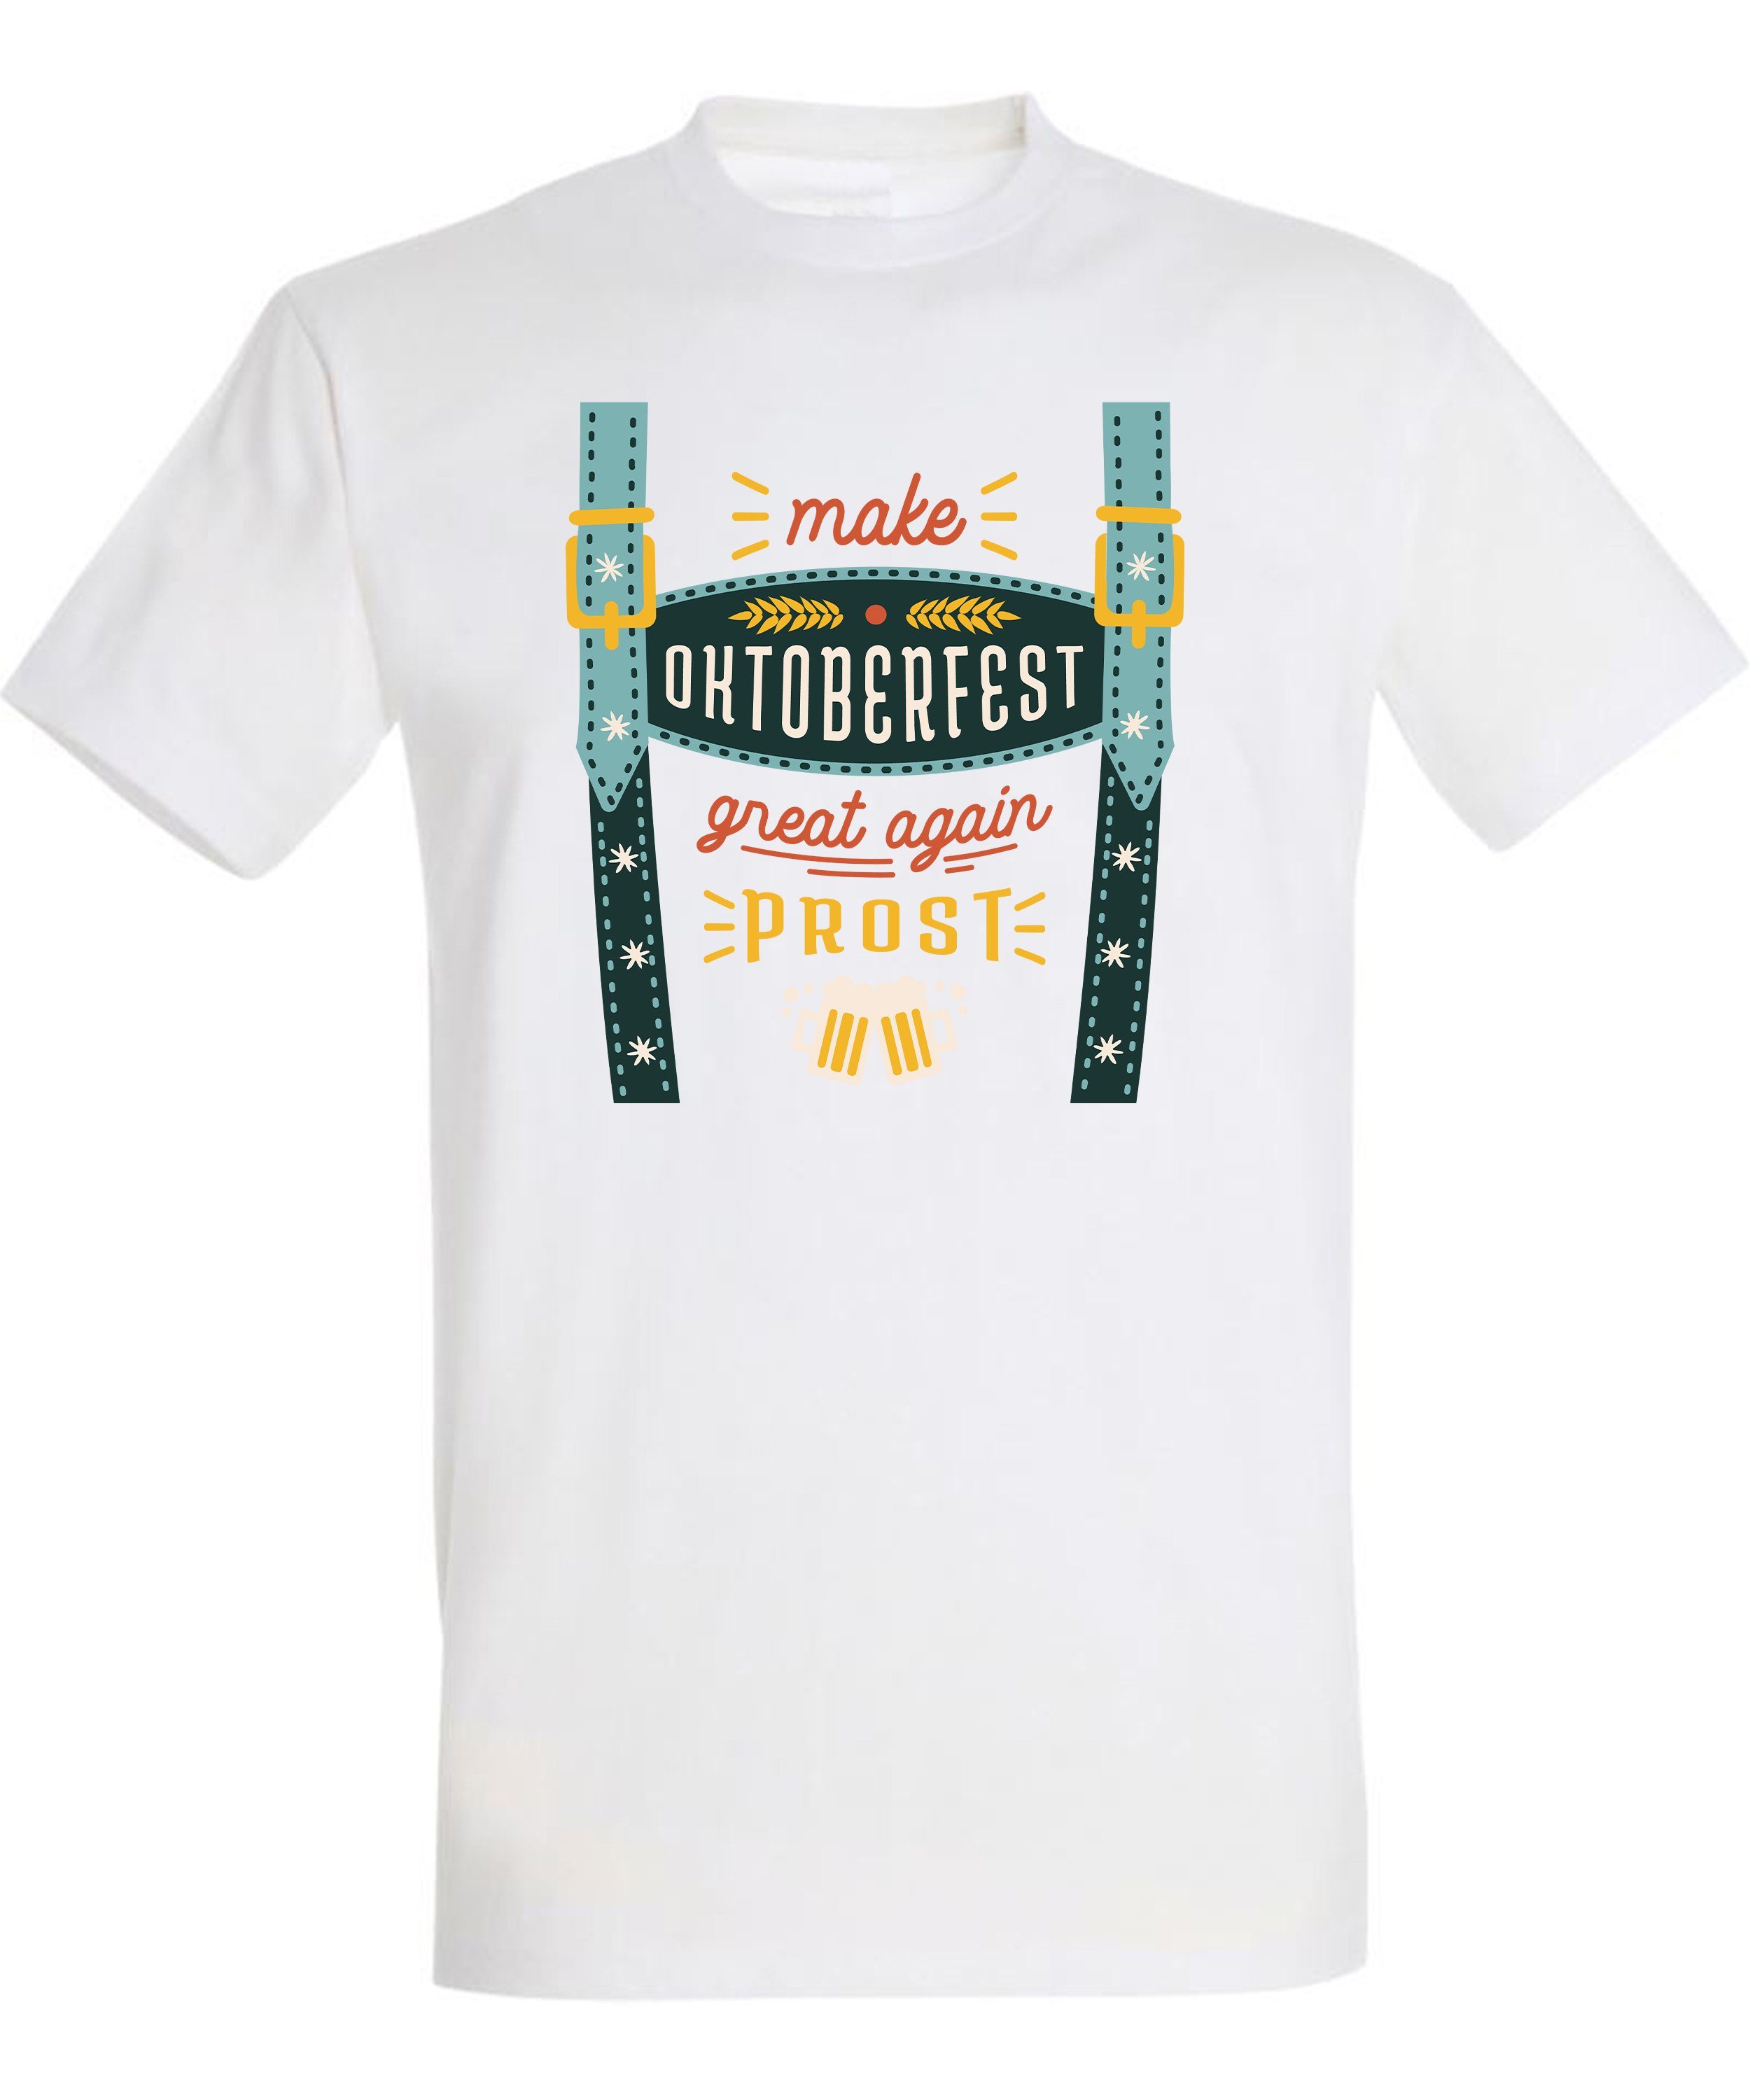 Fit, T-Shirt Hosenträger Trinkshirt Aufdruck T-Shirt Baumwollshirt Print Shirt Herren Regular Fun mit Oktoberfest MyDesign24 weiss - i317